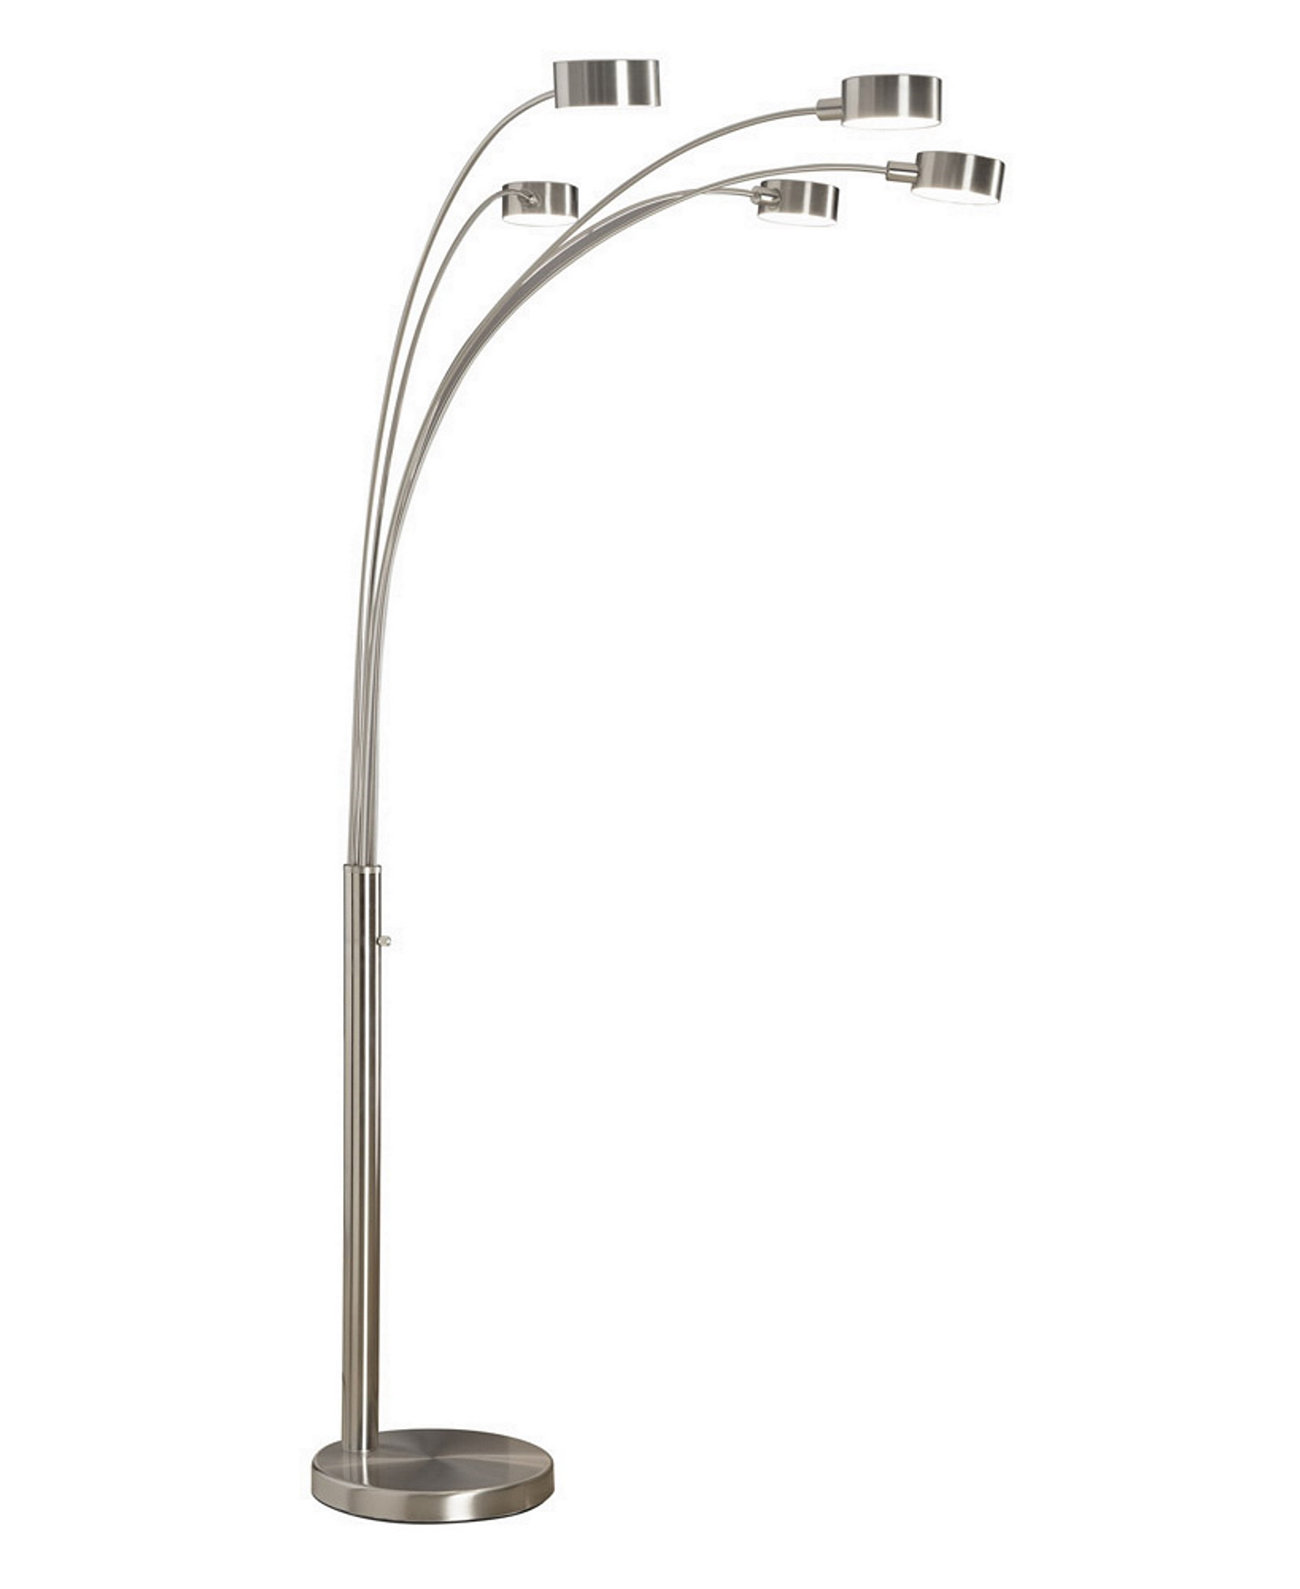 Arc Lamp лампа дуга для маникюра. Арочный торшер. Торшер с диммером. Arc light